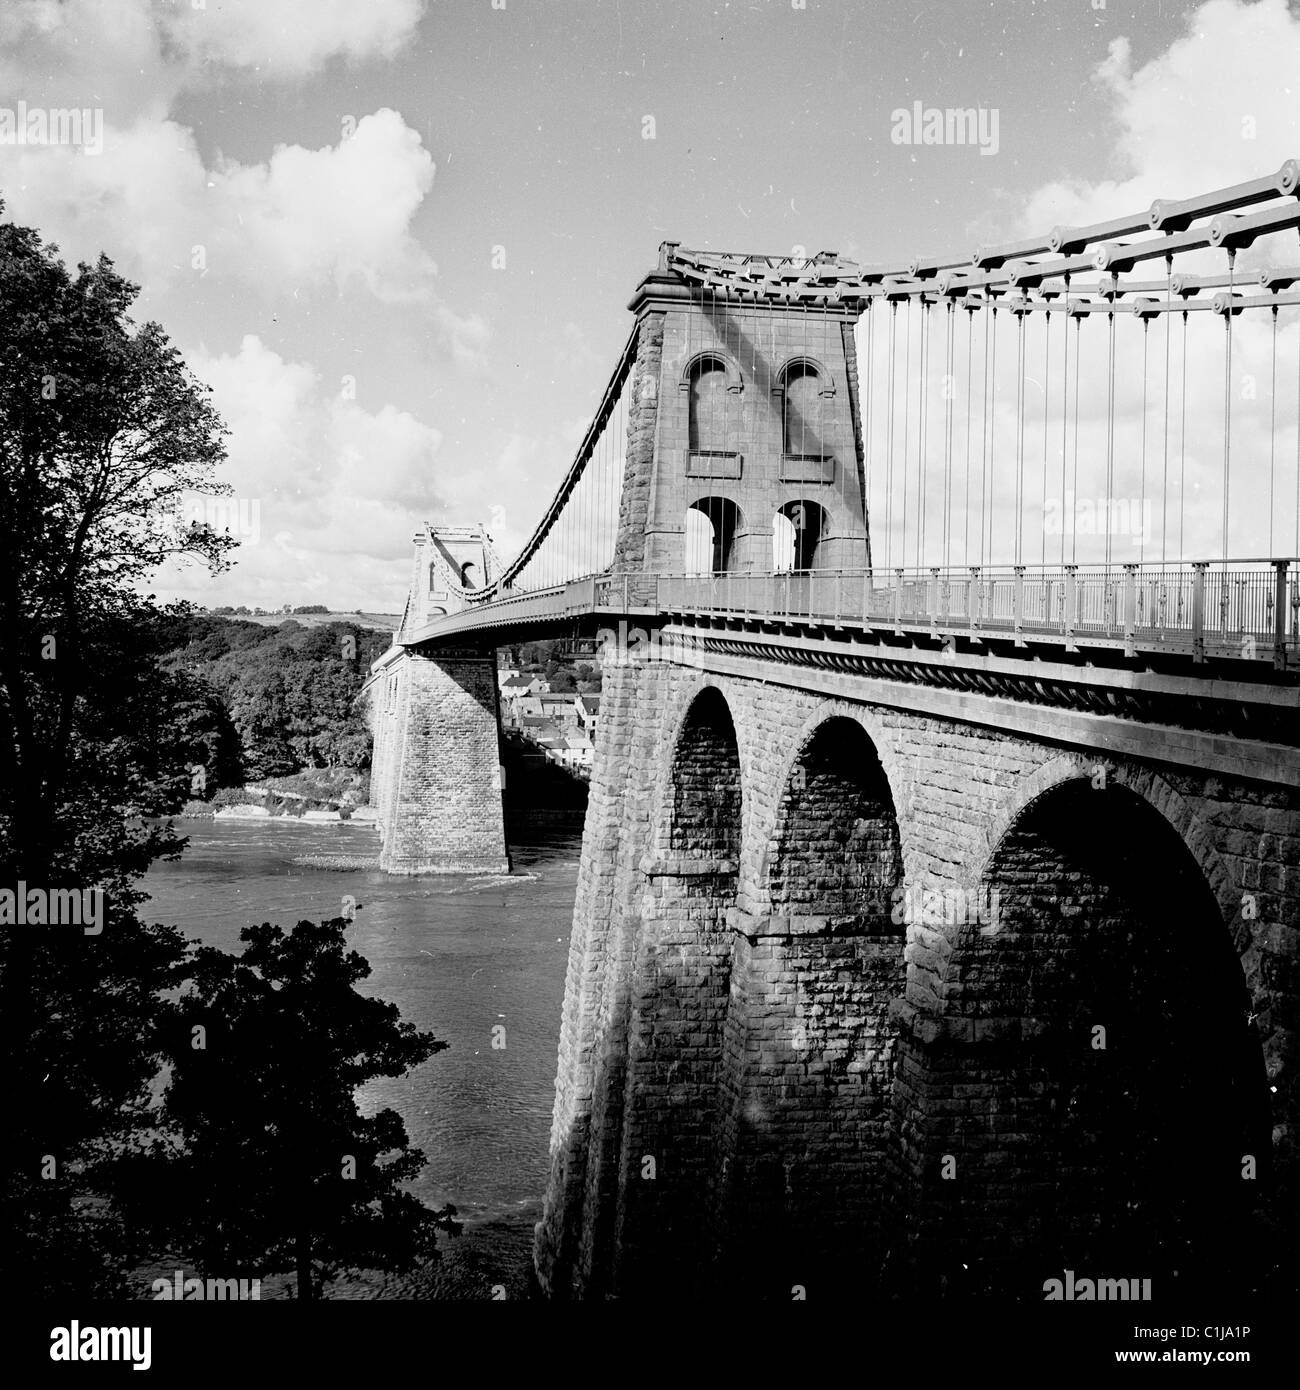 Années 1960, historique, le pont suspendu Menai, pays de Galles, conçu par Thomas Telford et le premier pont suspendu majeur du monde, ouvert en 1826. Banque D'Images